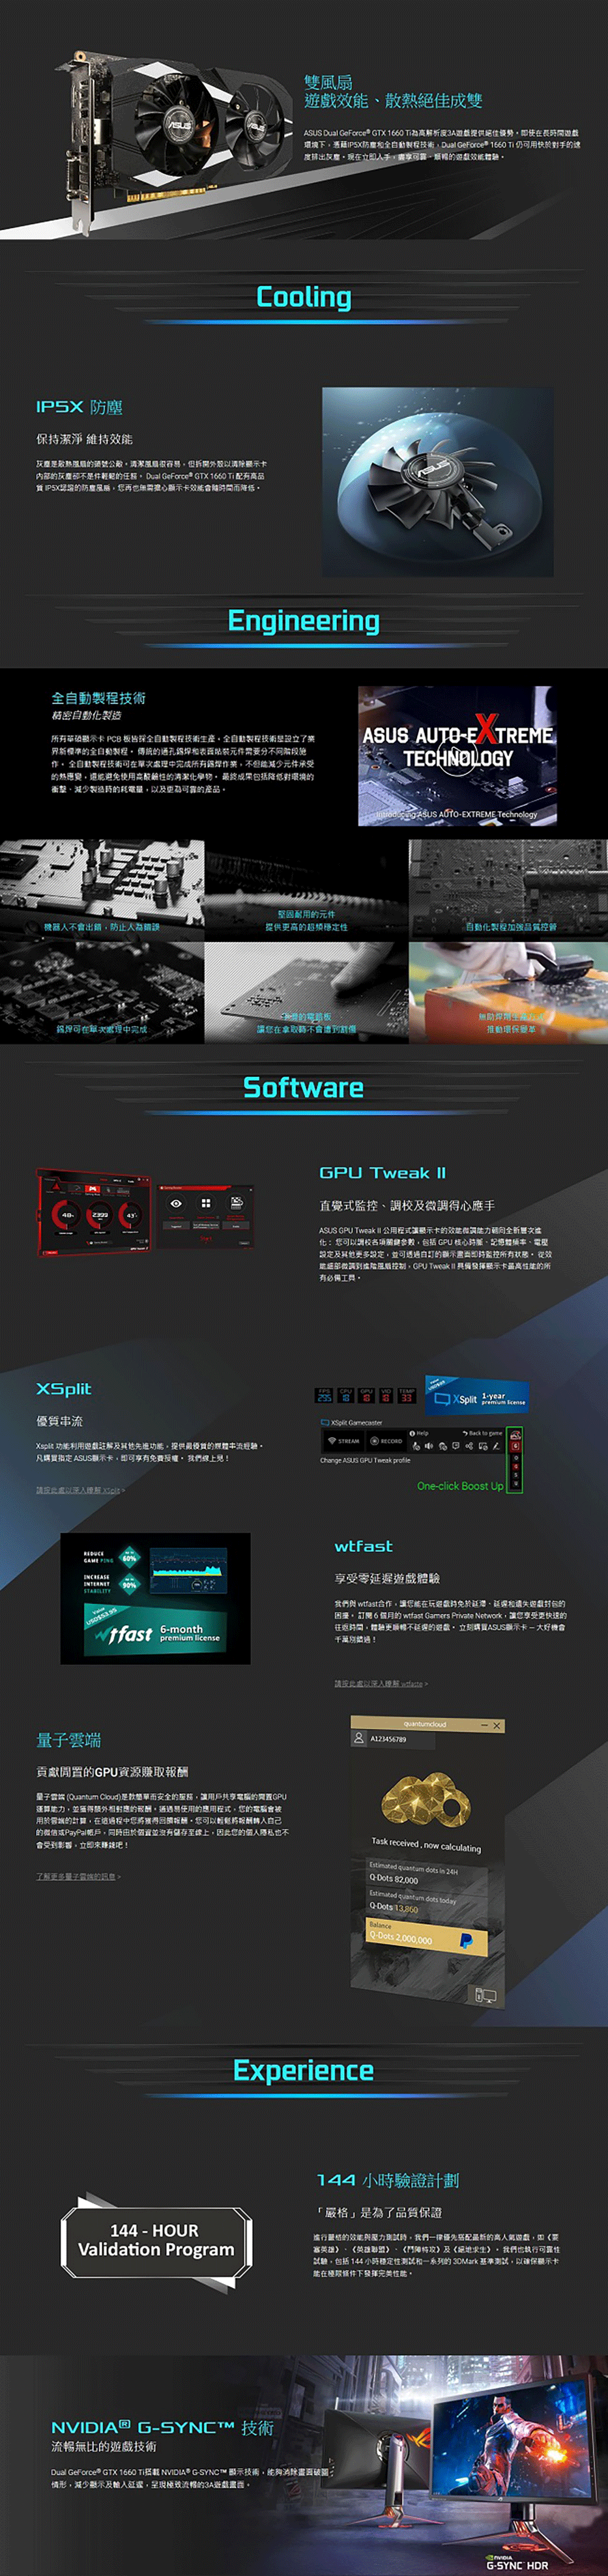 華碩 ASUS DUAL GeForce GTX™ 1660Ti O6G GAMING 顯示卡